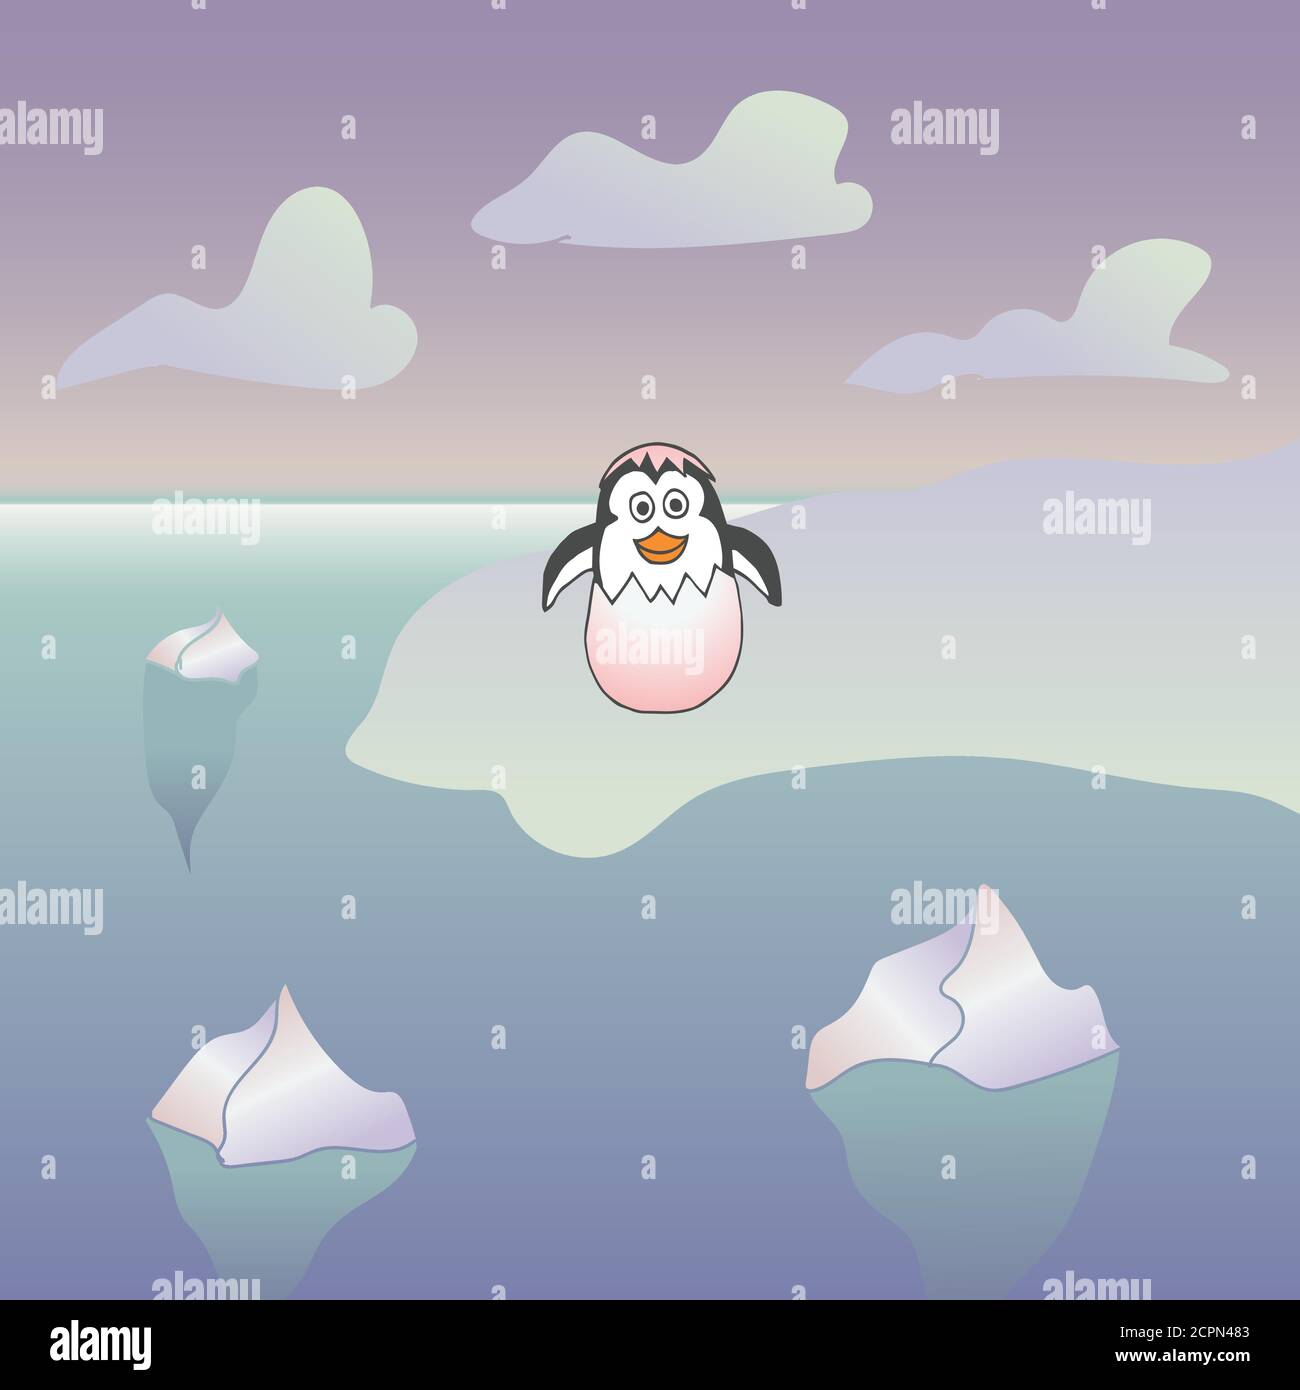 Illustrazione vettoriale di un pinguino neonato. Pinguino divertente su un iceberg che ha sbattuto da un uovo Illustrazione Vettoriale